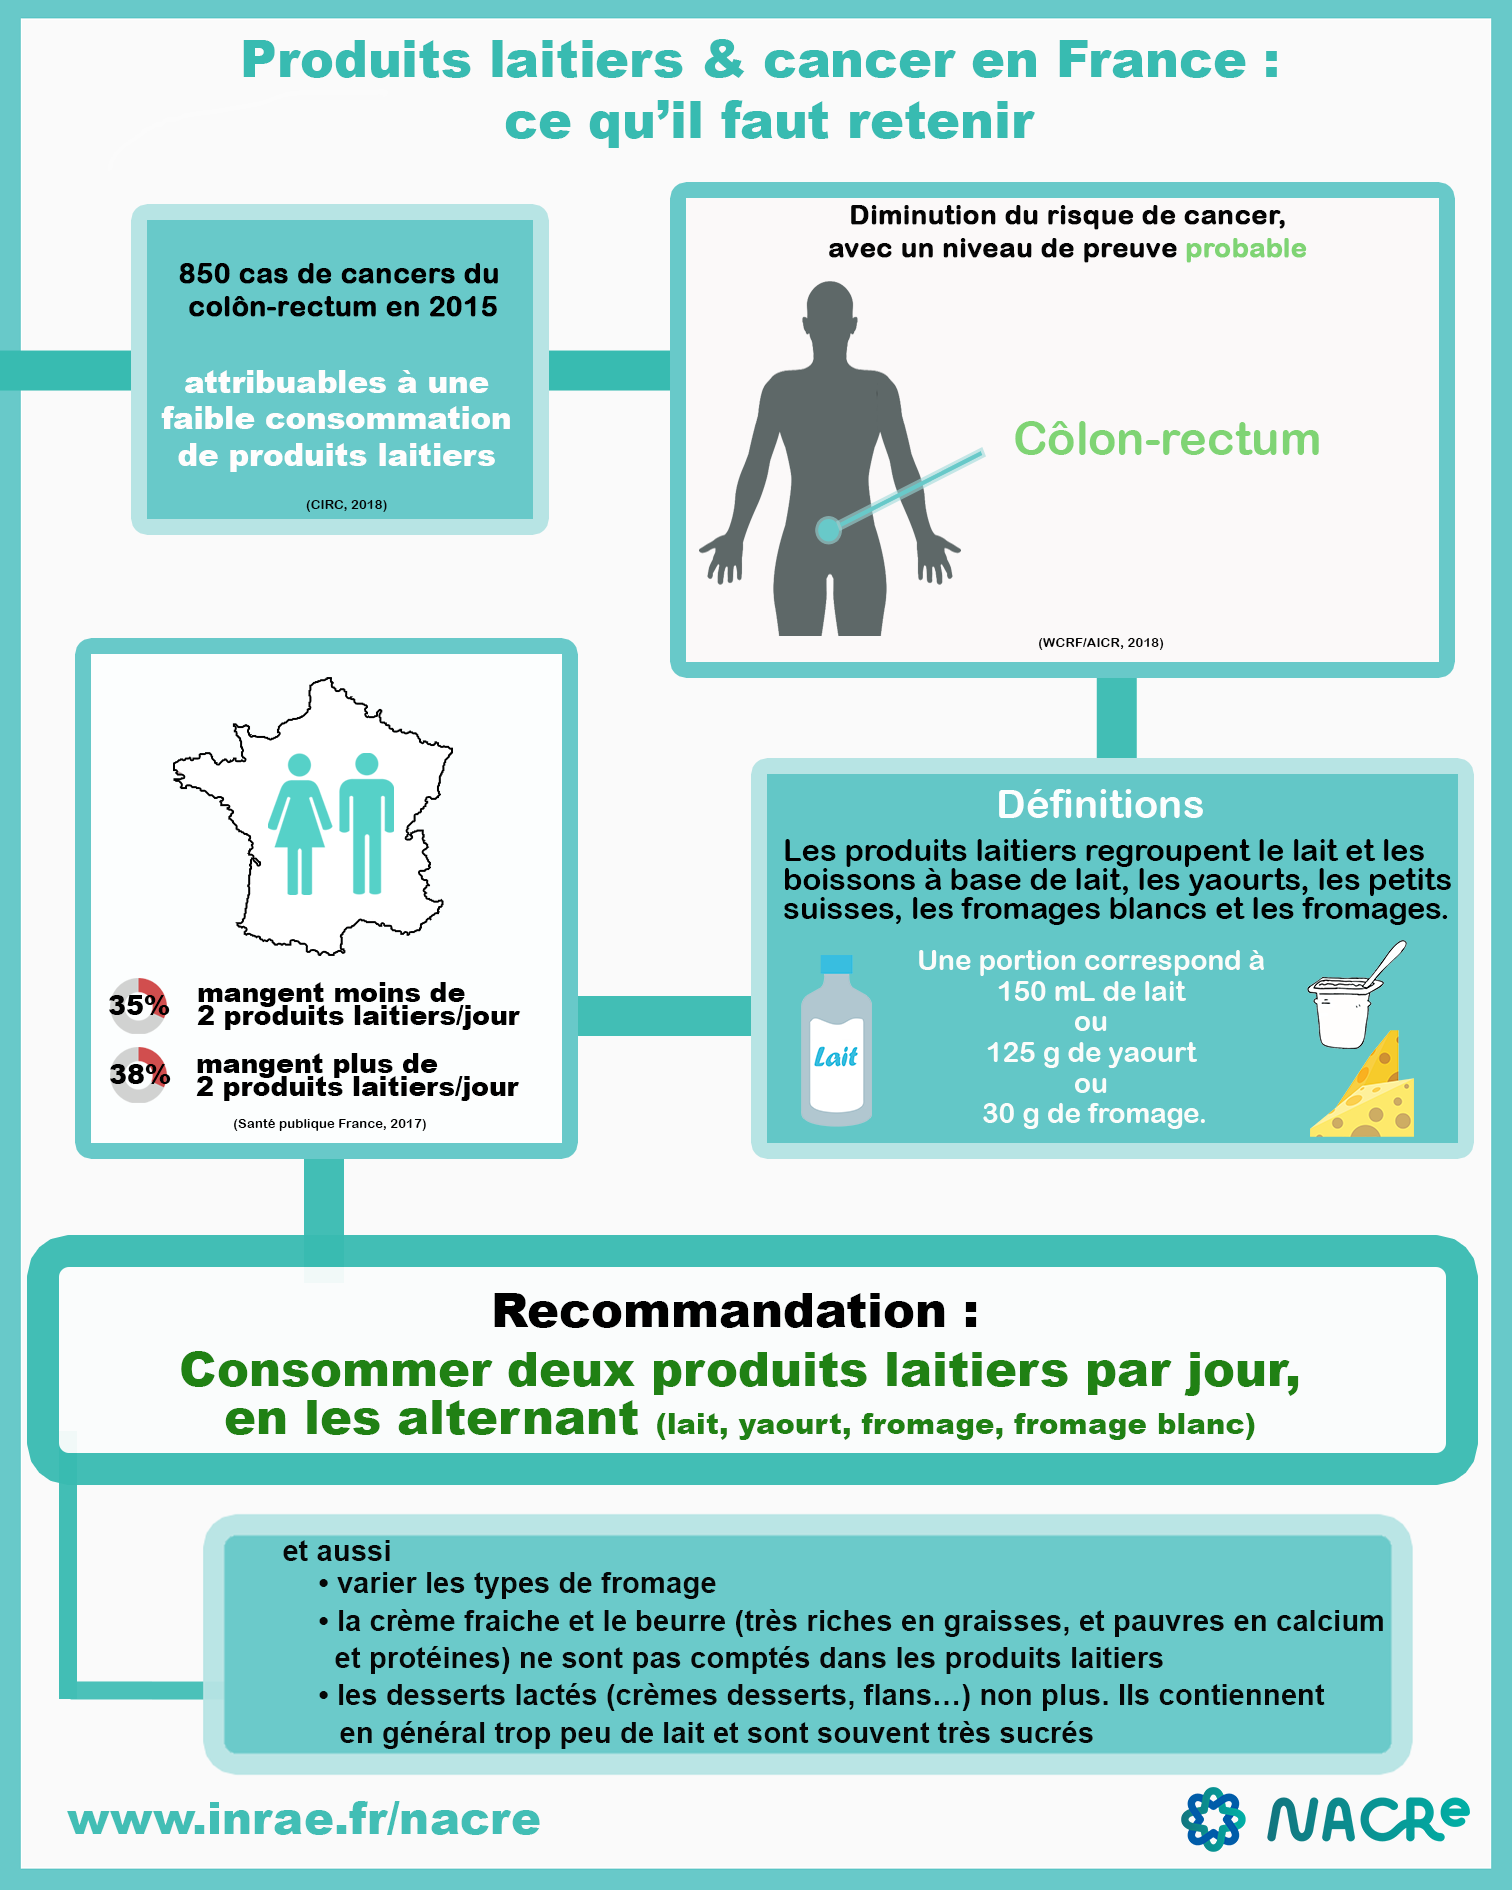 Infographie Produits laitiers et risque de cancer France 2020